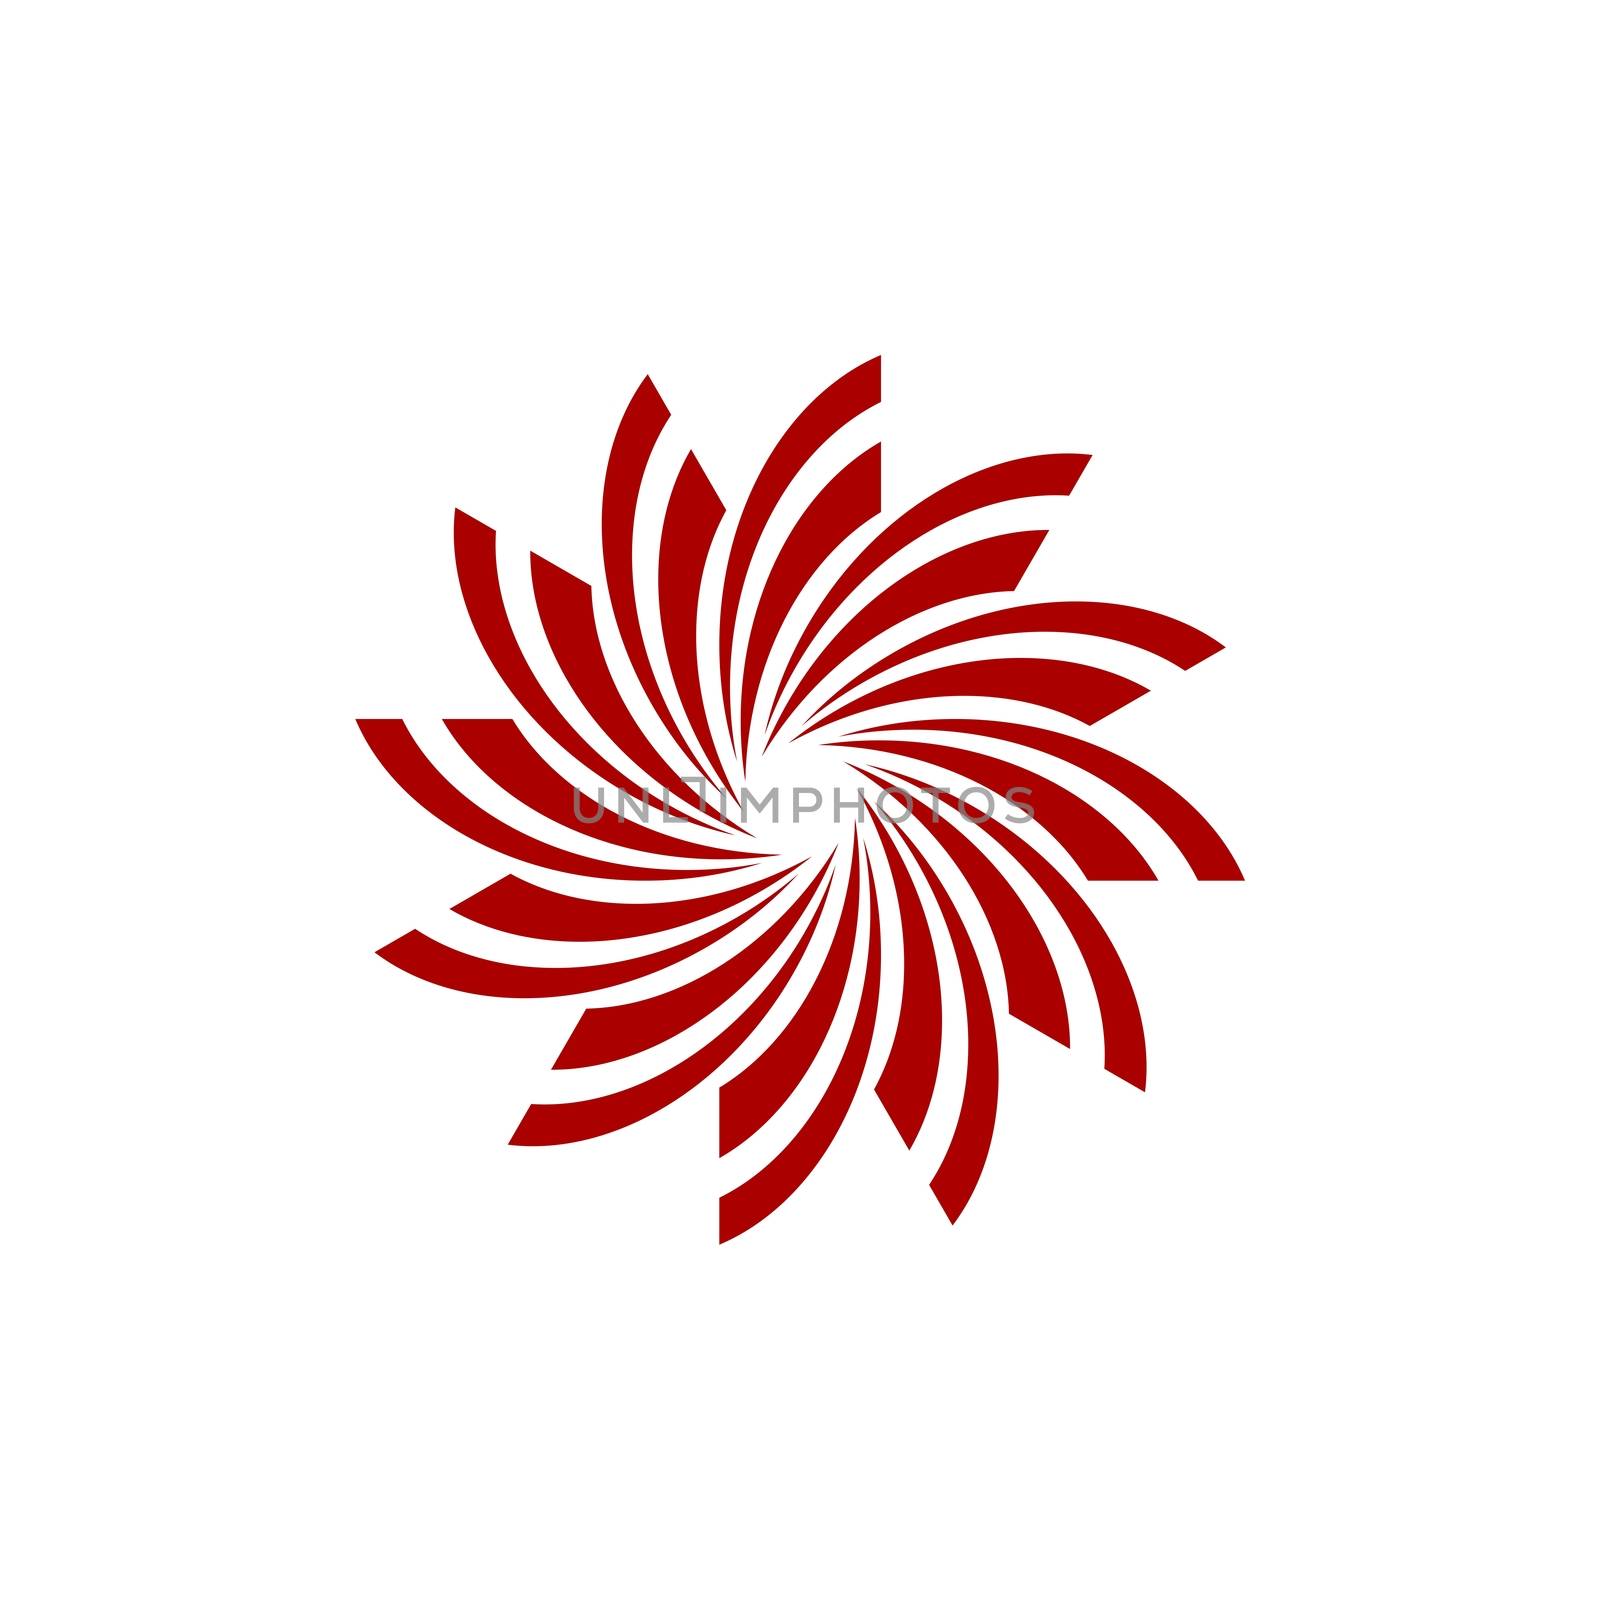 Red Star Flower Logo Template Illustration Design. Vector EPS 10.